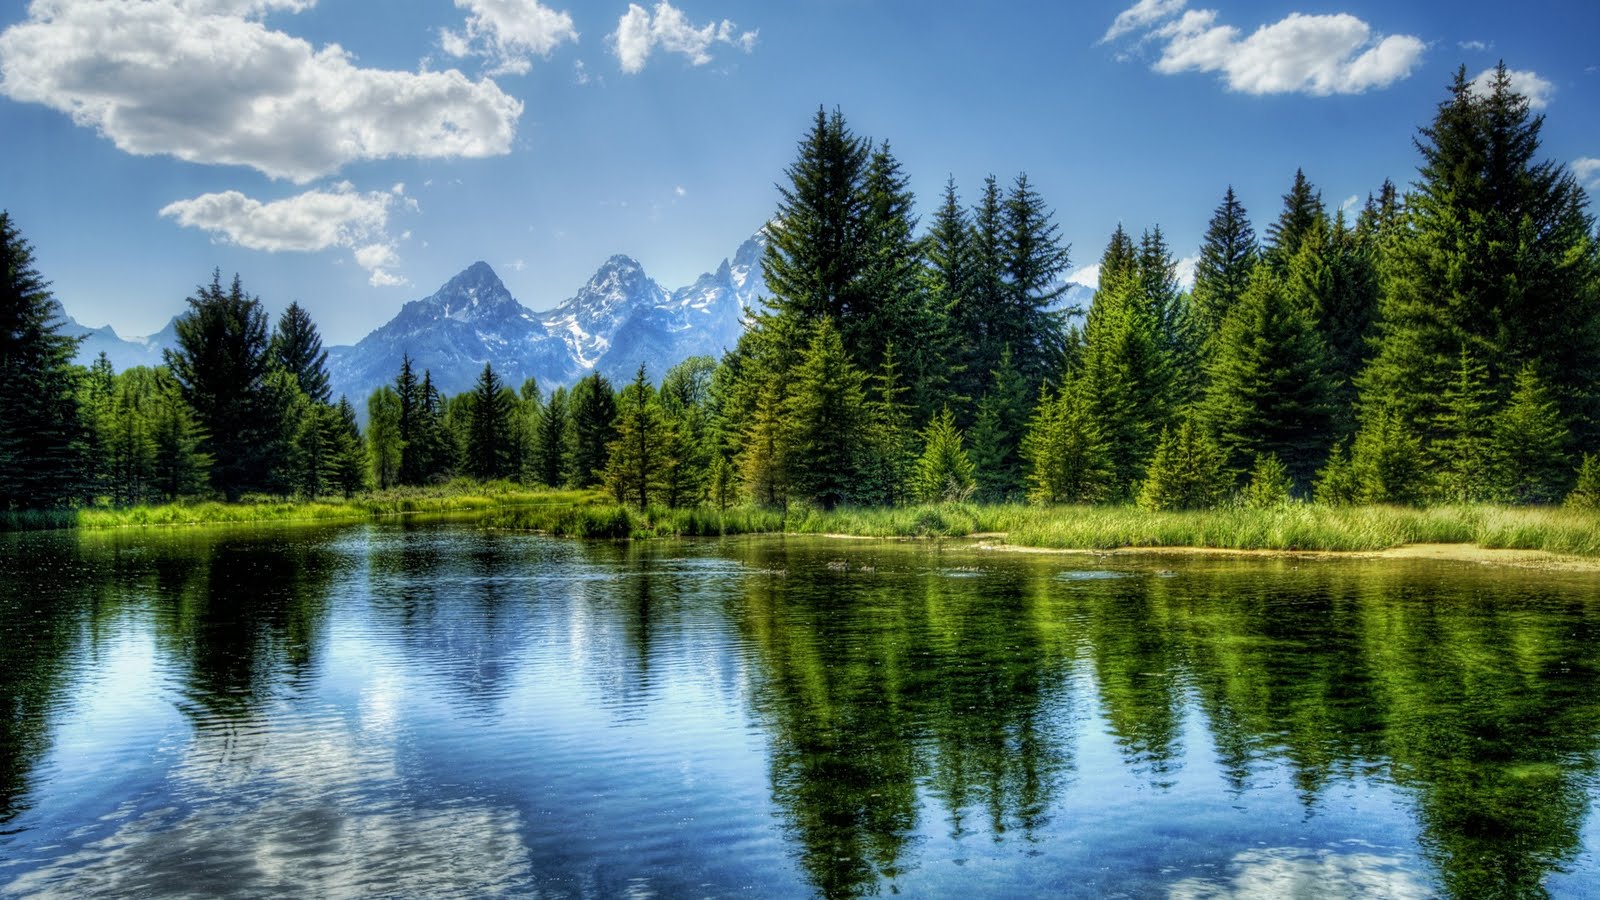 Peaceful Lake Nature Wallpaper For Desktop